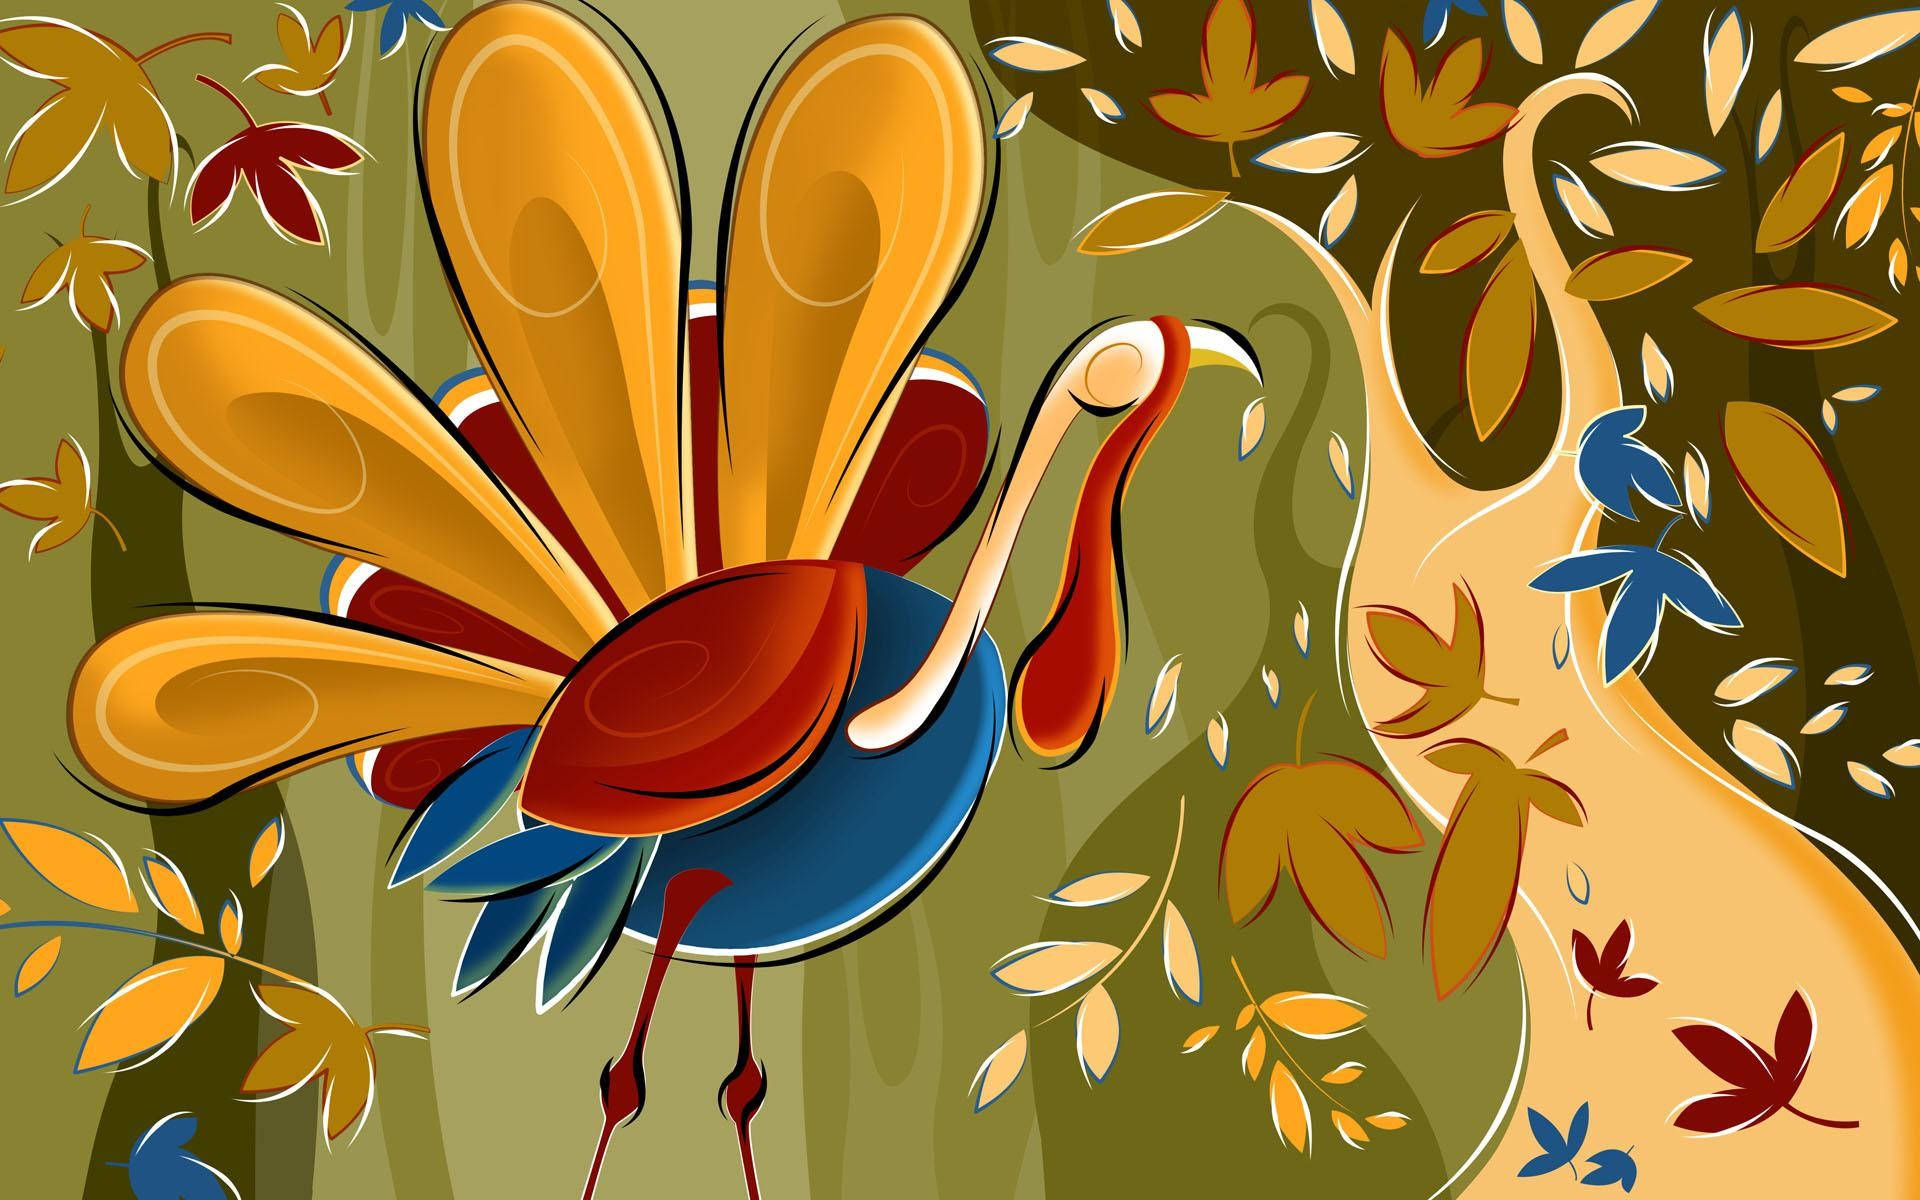 Tackdagskalkonmålningthanksgiving Day Turkey Painting. Wallpaper